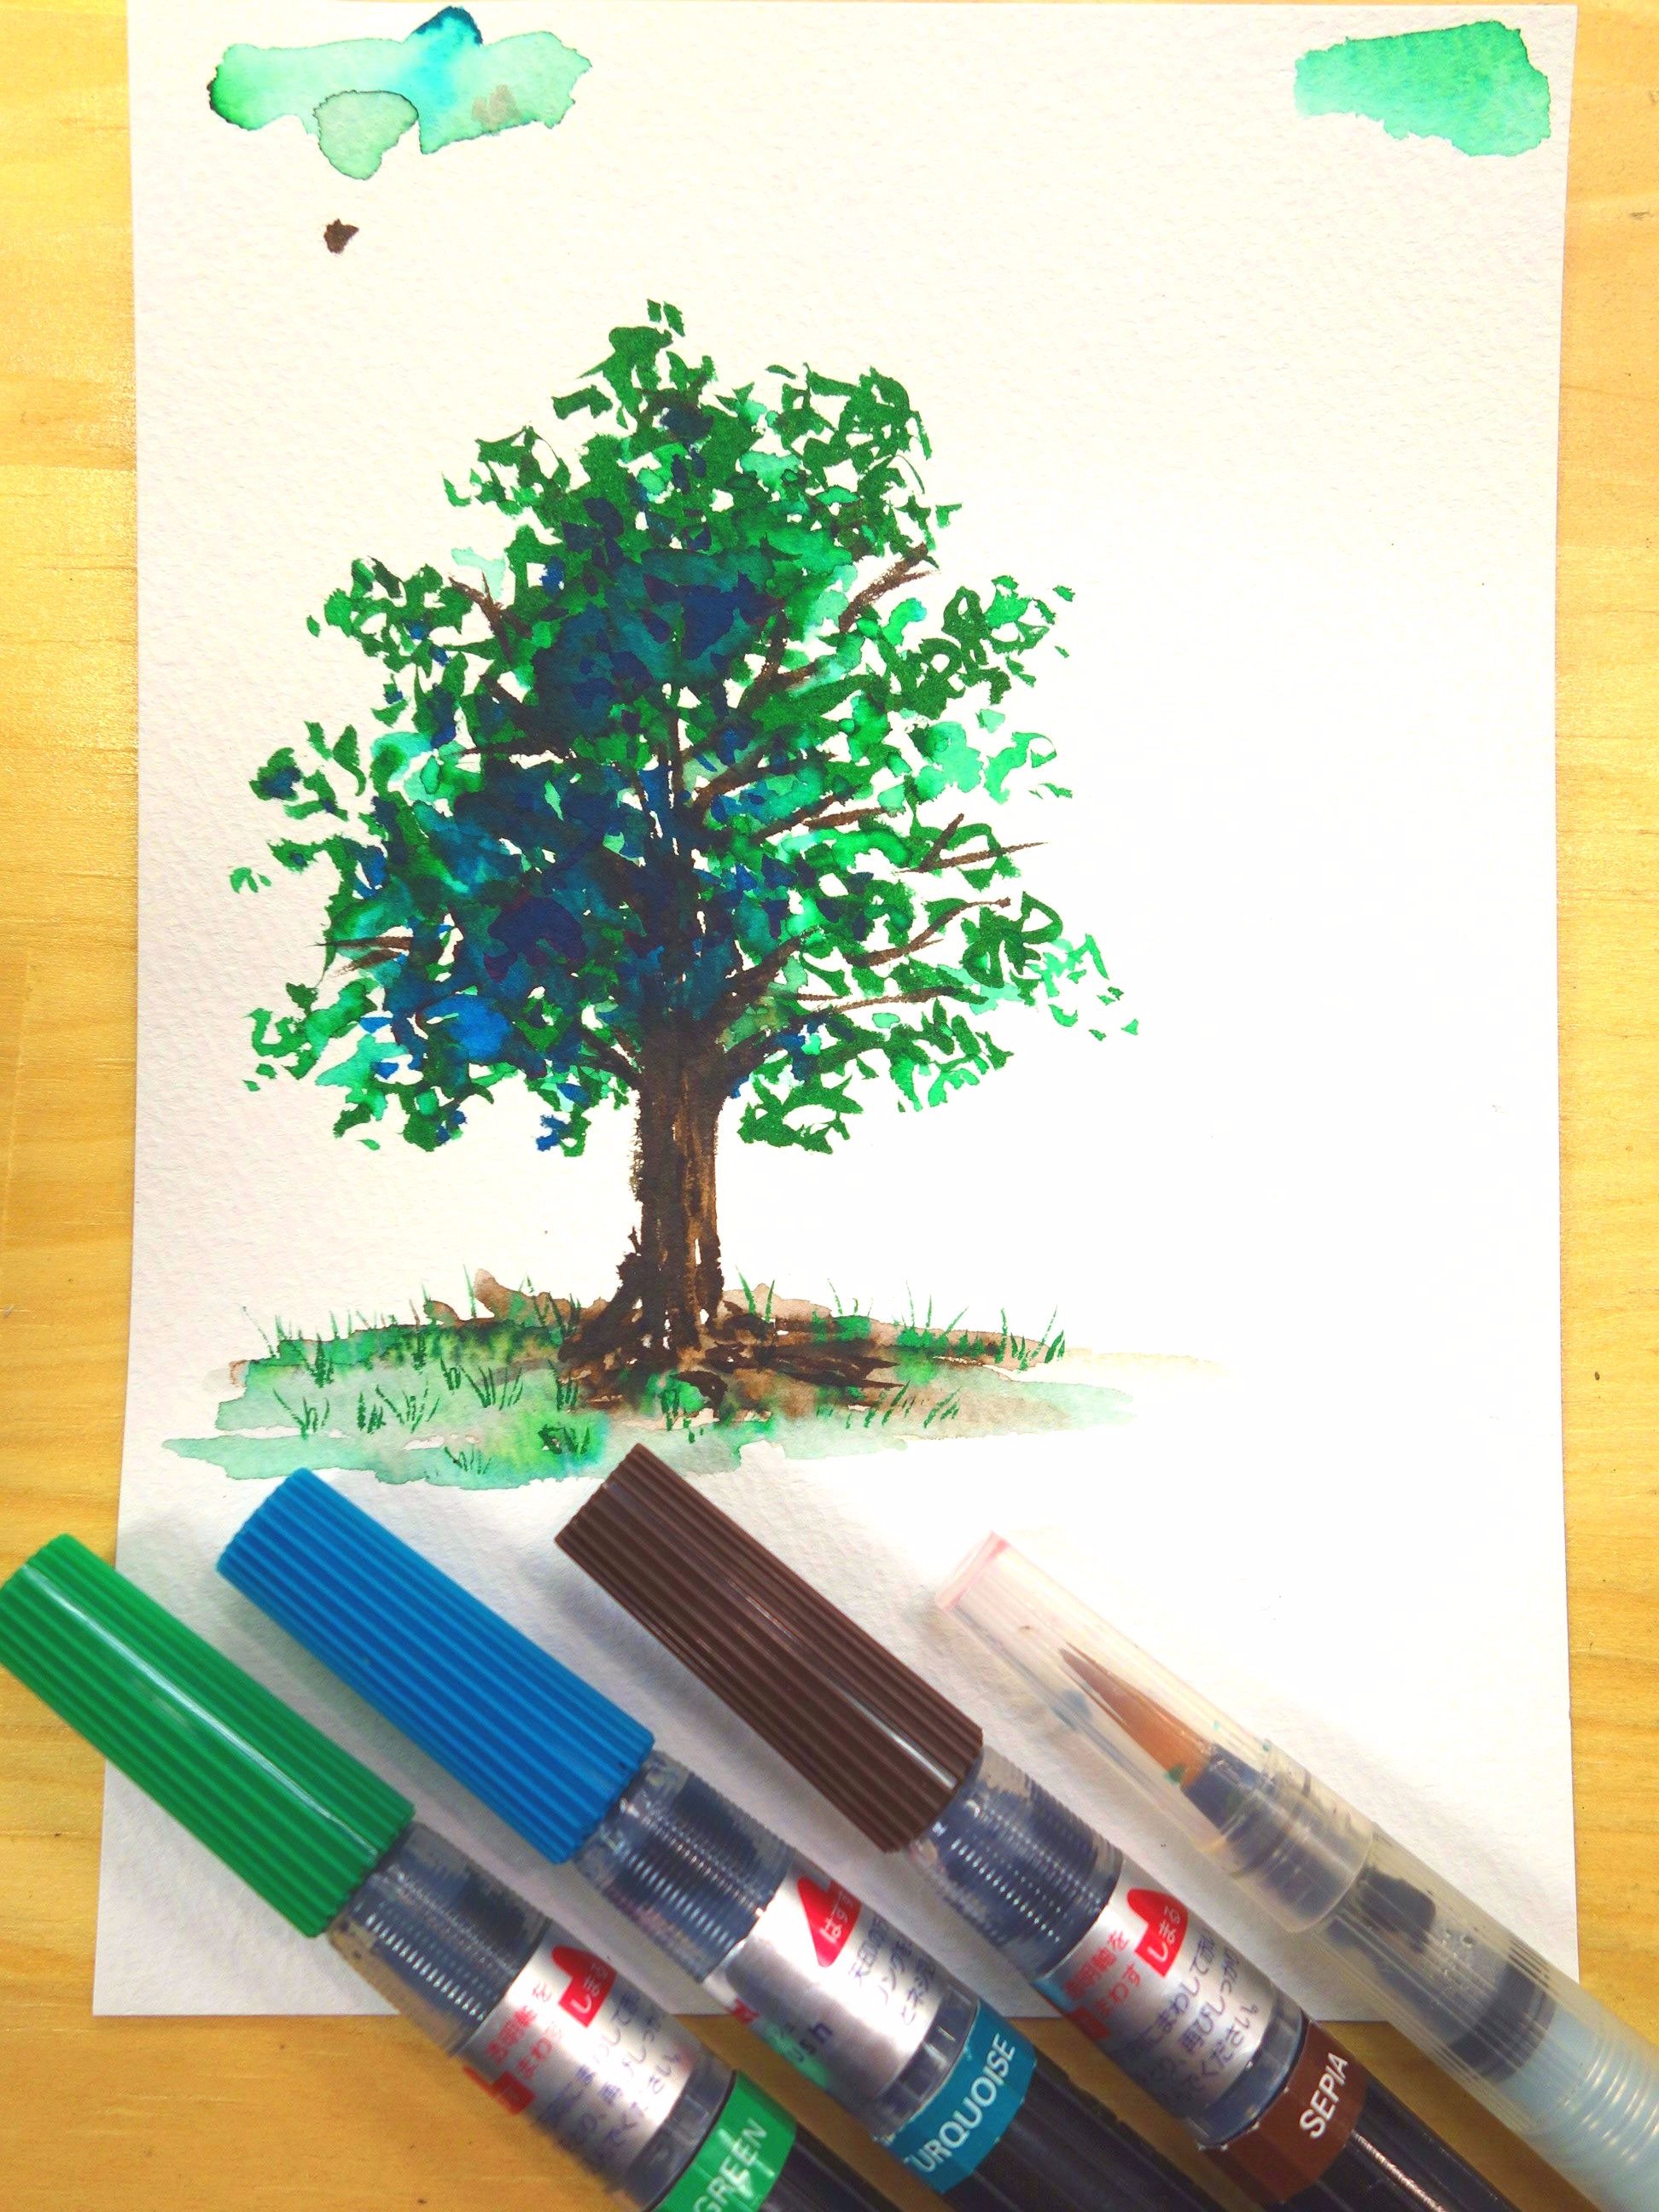 ユーアーツ Twitterren ぺんてる アートブラッシュ でお手軽水彩イラスト 筆ペンタイプでパレット不要 水筆でぼかしも簡単 グリーン ターコイズ セピアの３色で木を描いてみました 全18色 １本 540円 手軽でとっても楽しいのでぜひ試してみてね お求め